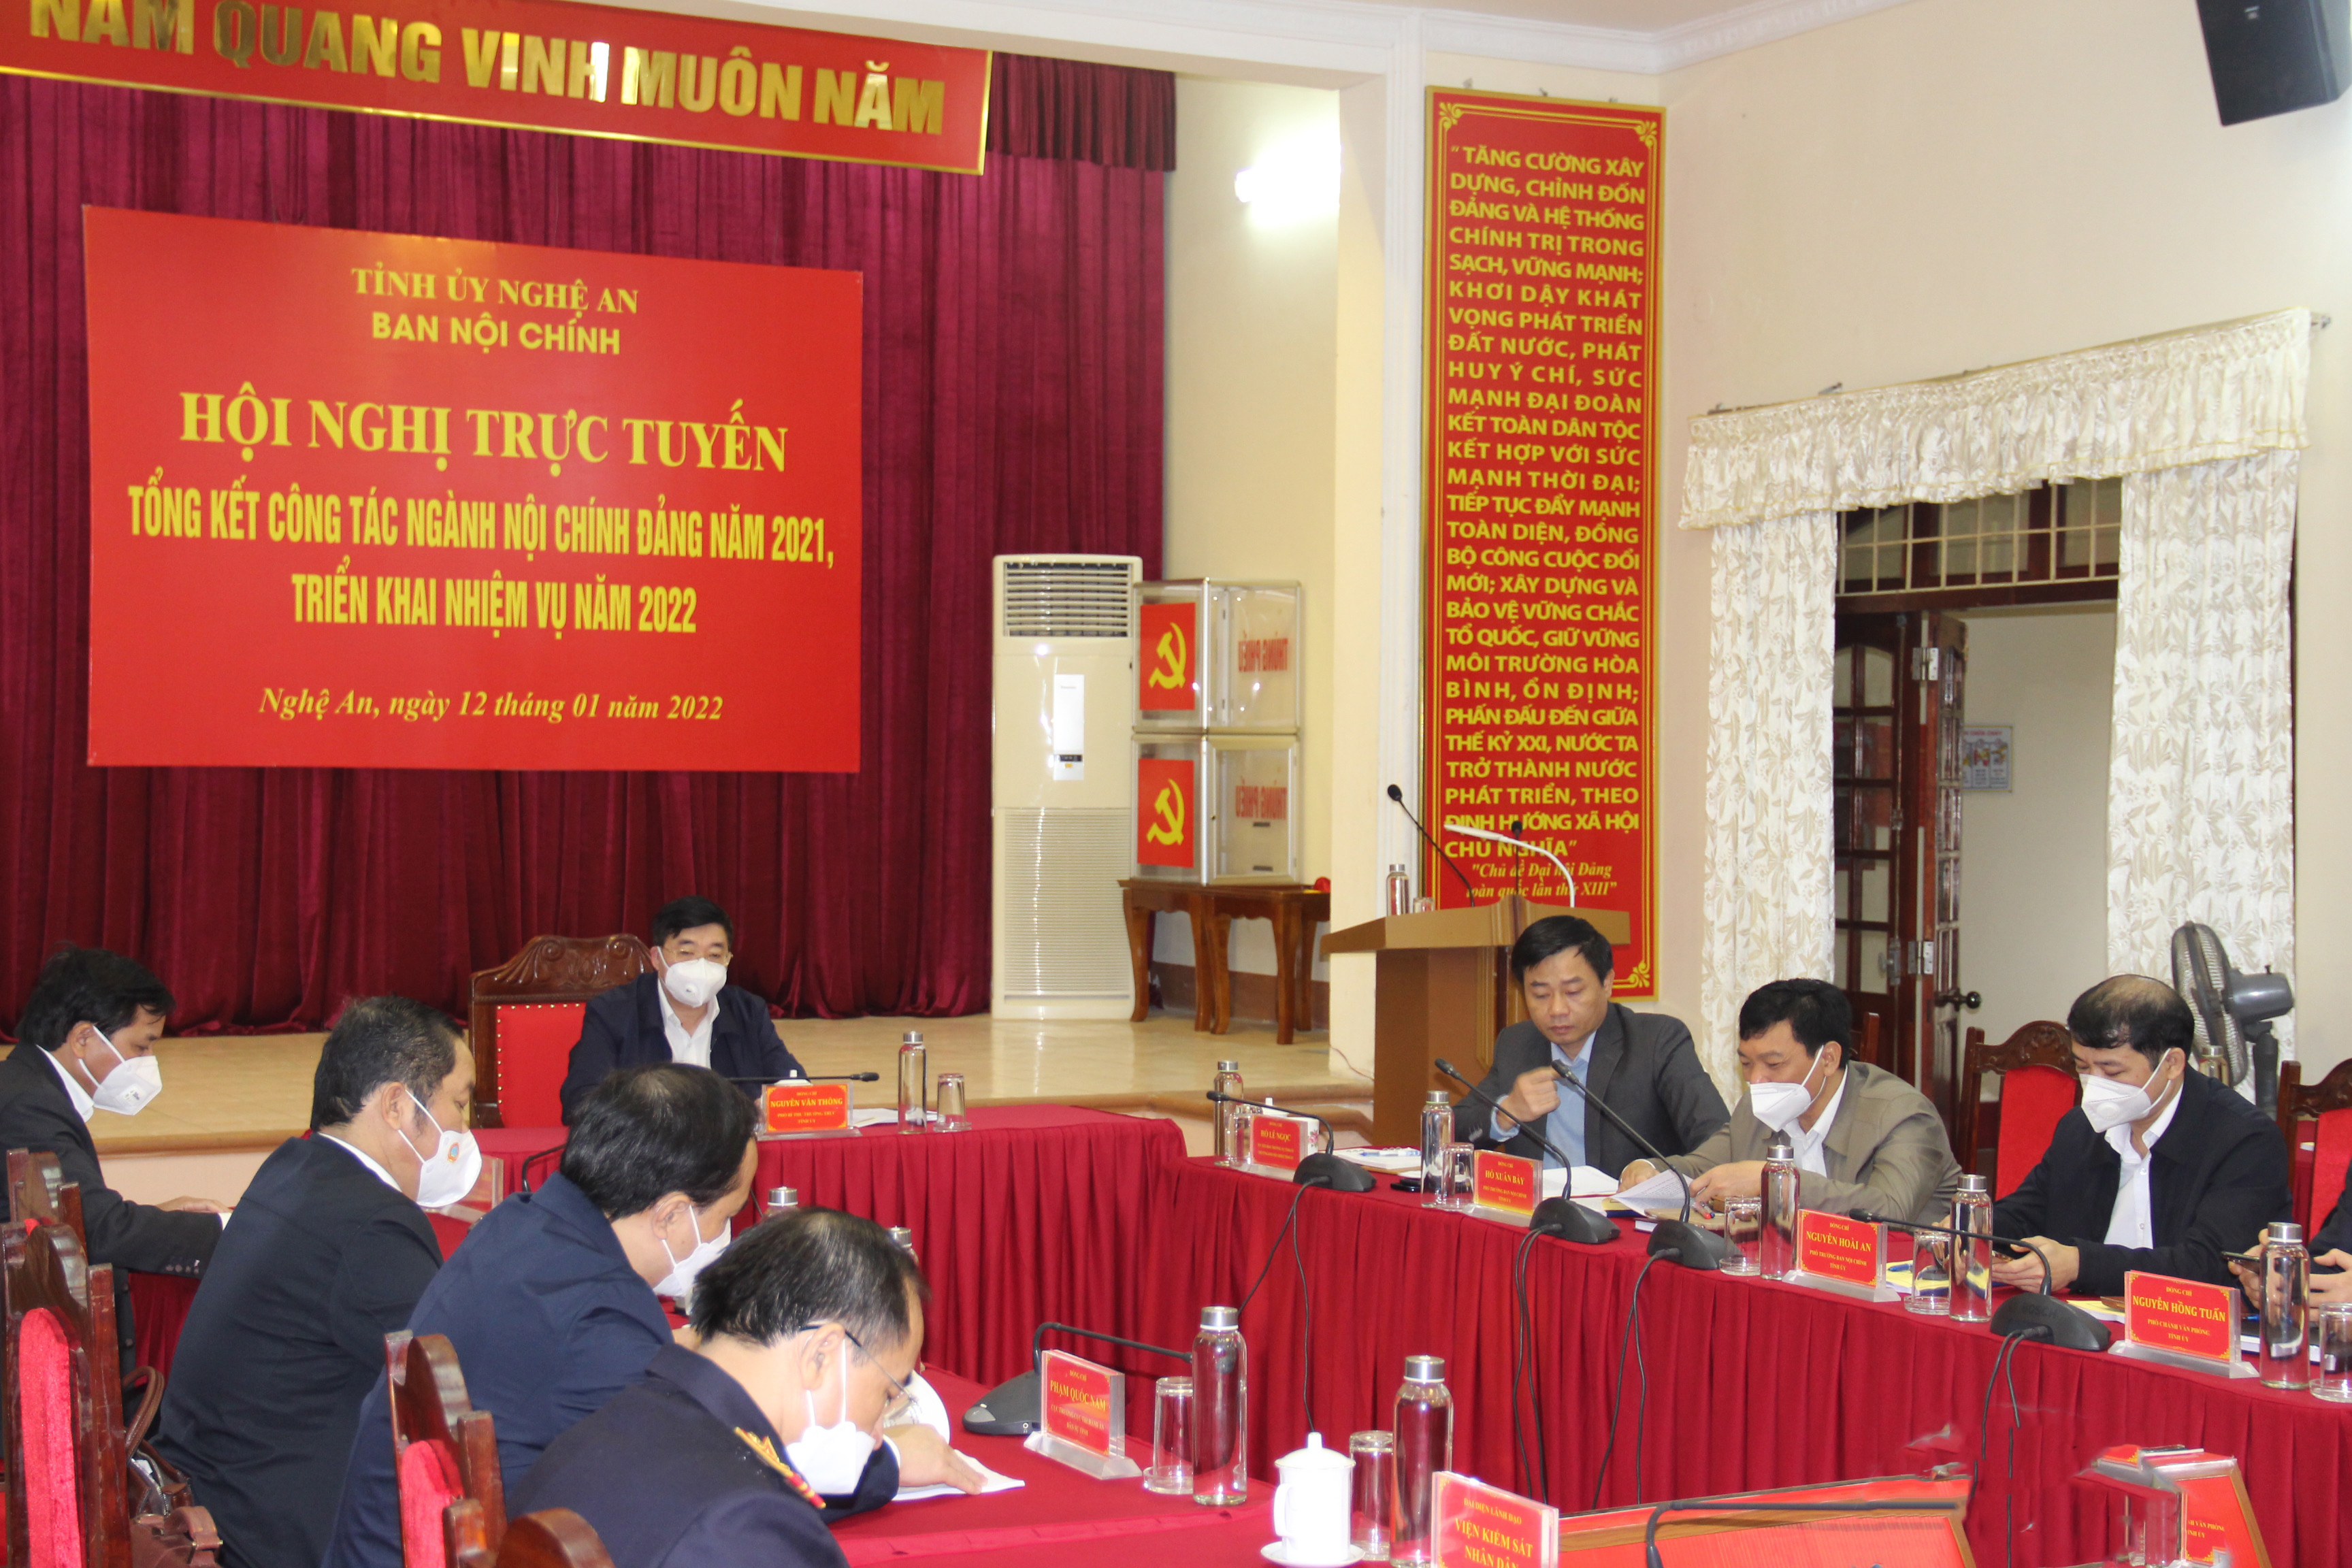 Đồng chí Nguyễn Văn Thông chủ trì hội nghị tại điểm cầu Nghệ An. Ảnh: Hoài Thu